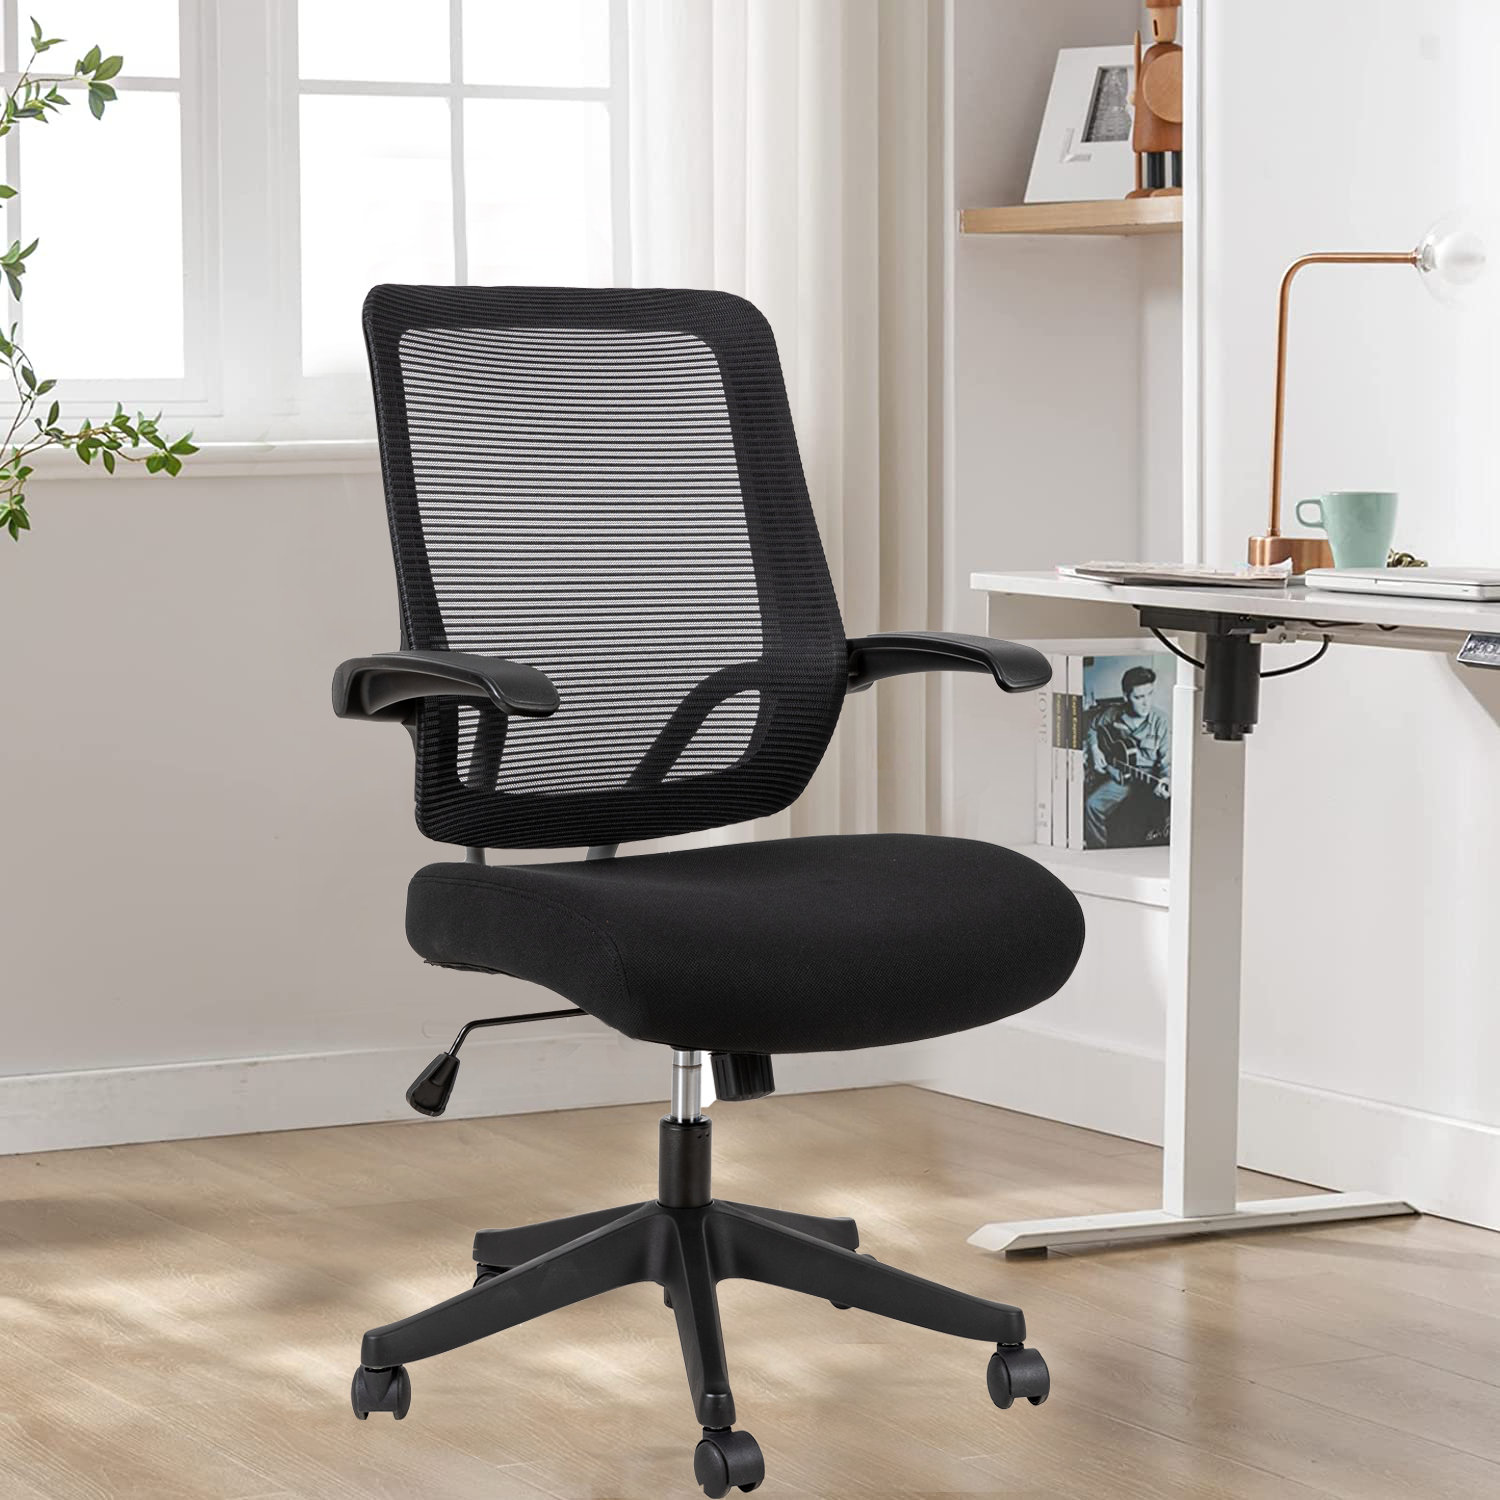 Kristinn Office Ergonomic Desk Chair Mesh Task Chair with Lumb Inbox Zero Frame Color: Black, Upholstery Color: Black